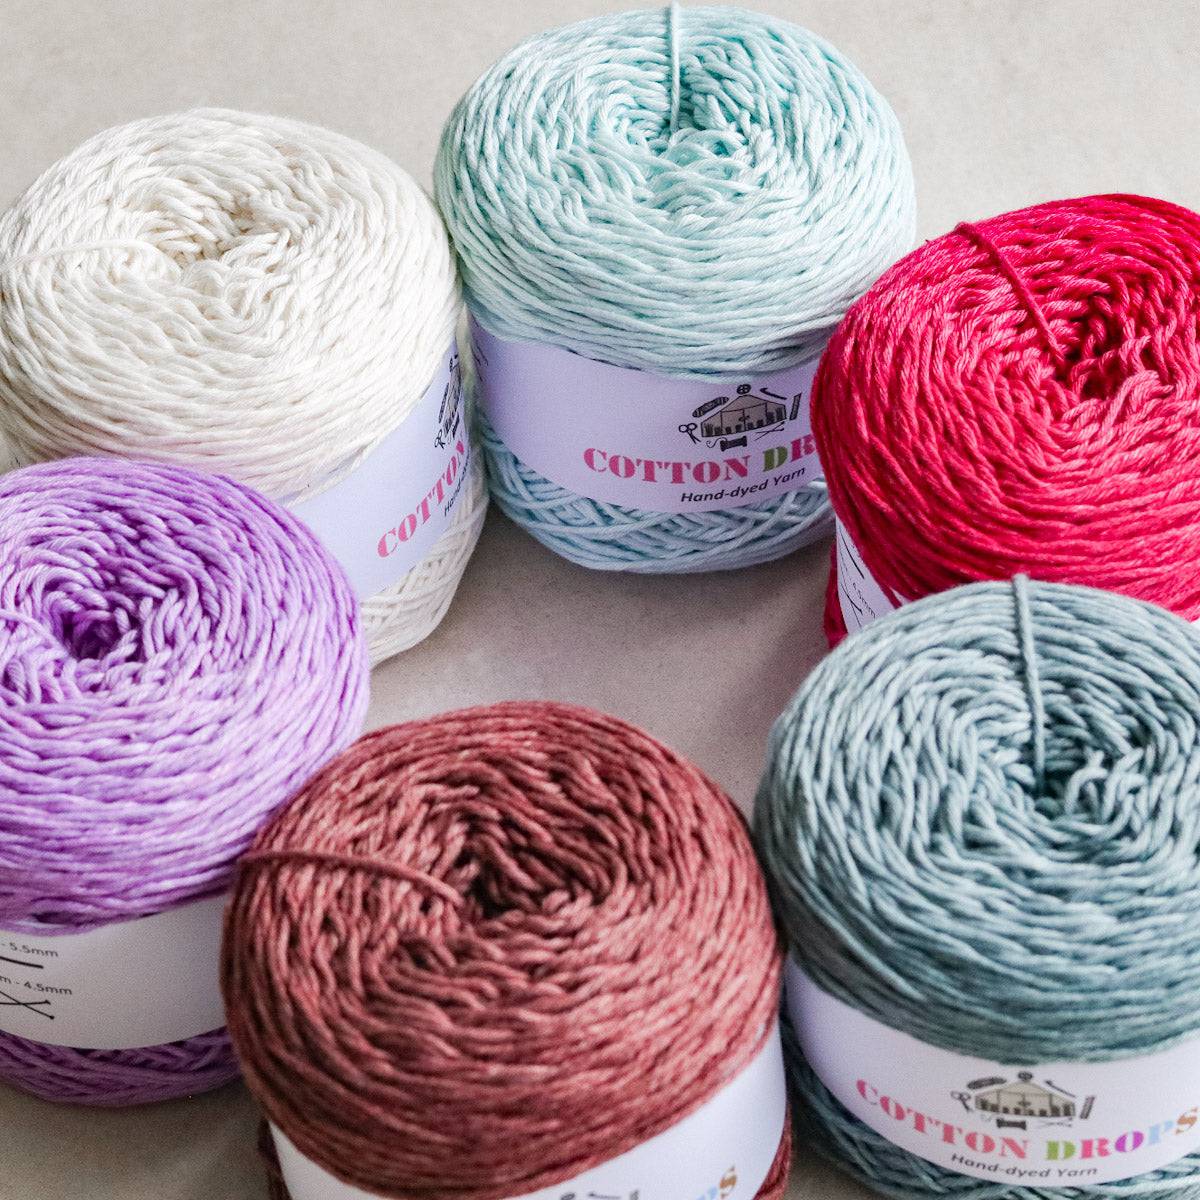 Cotton Drops Crochet Yarn